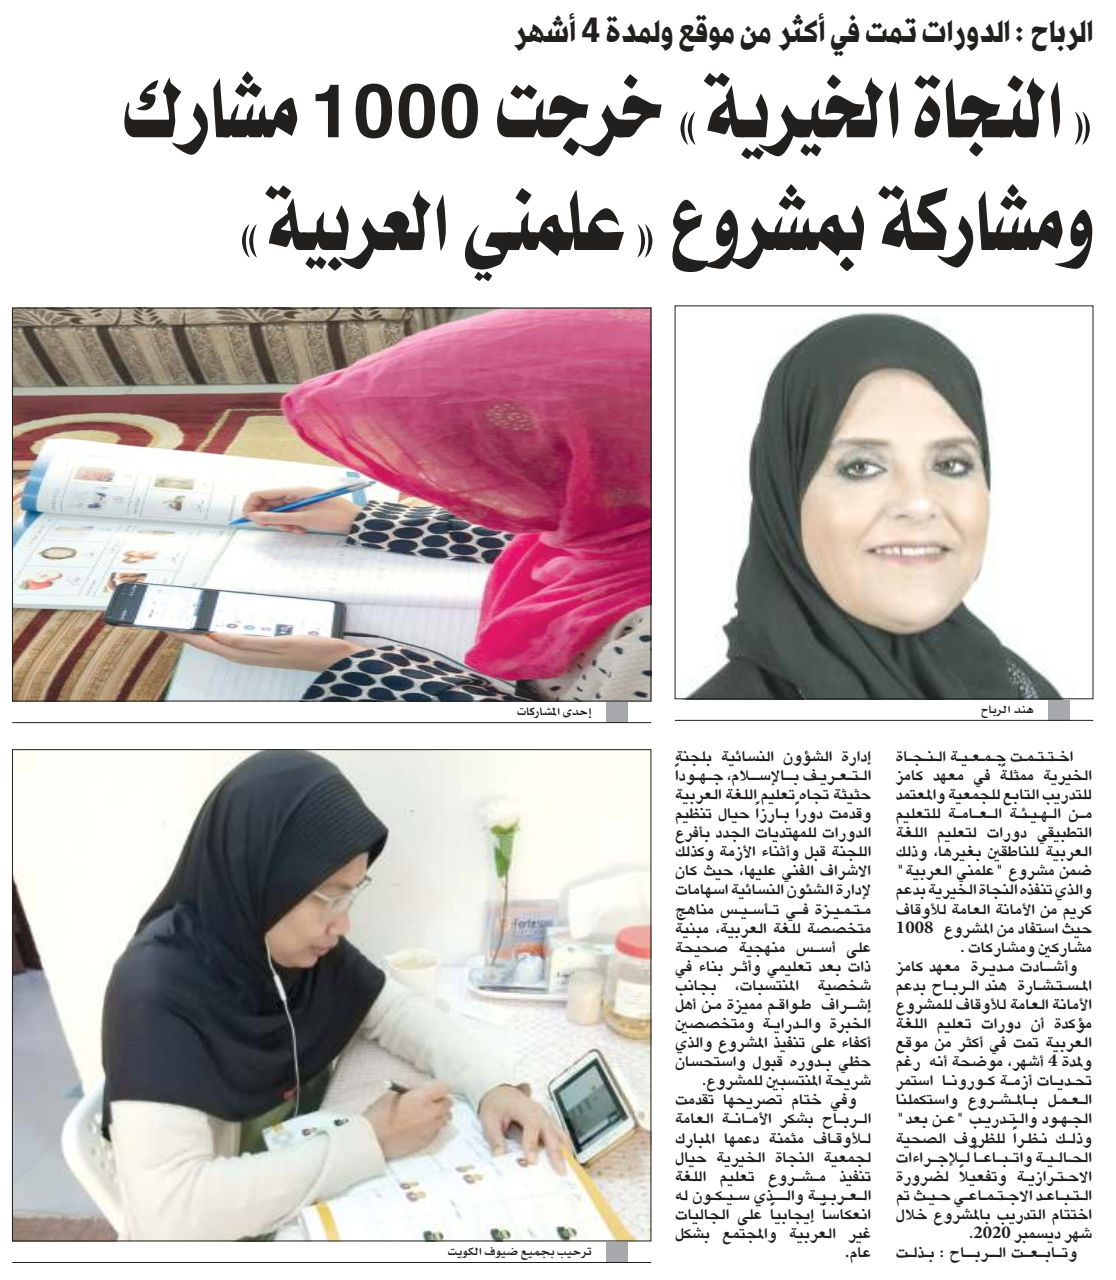 "النجاة الخيرية" خرجت 1000مشارك ومشاركة بمشروع علمني العربية